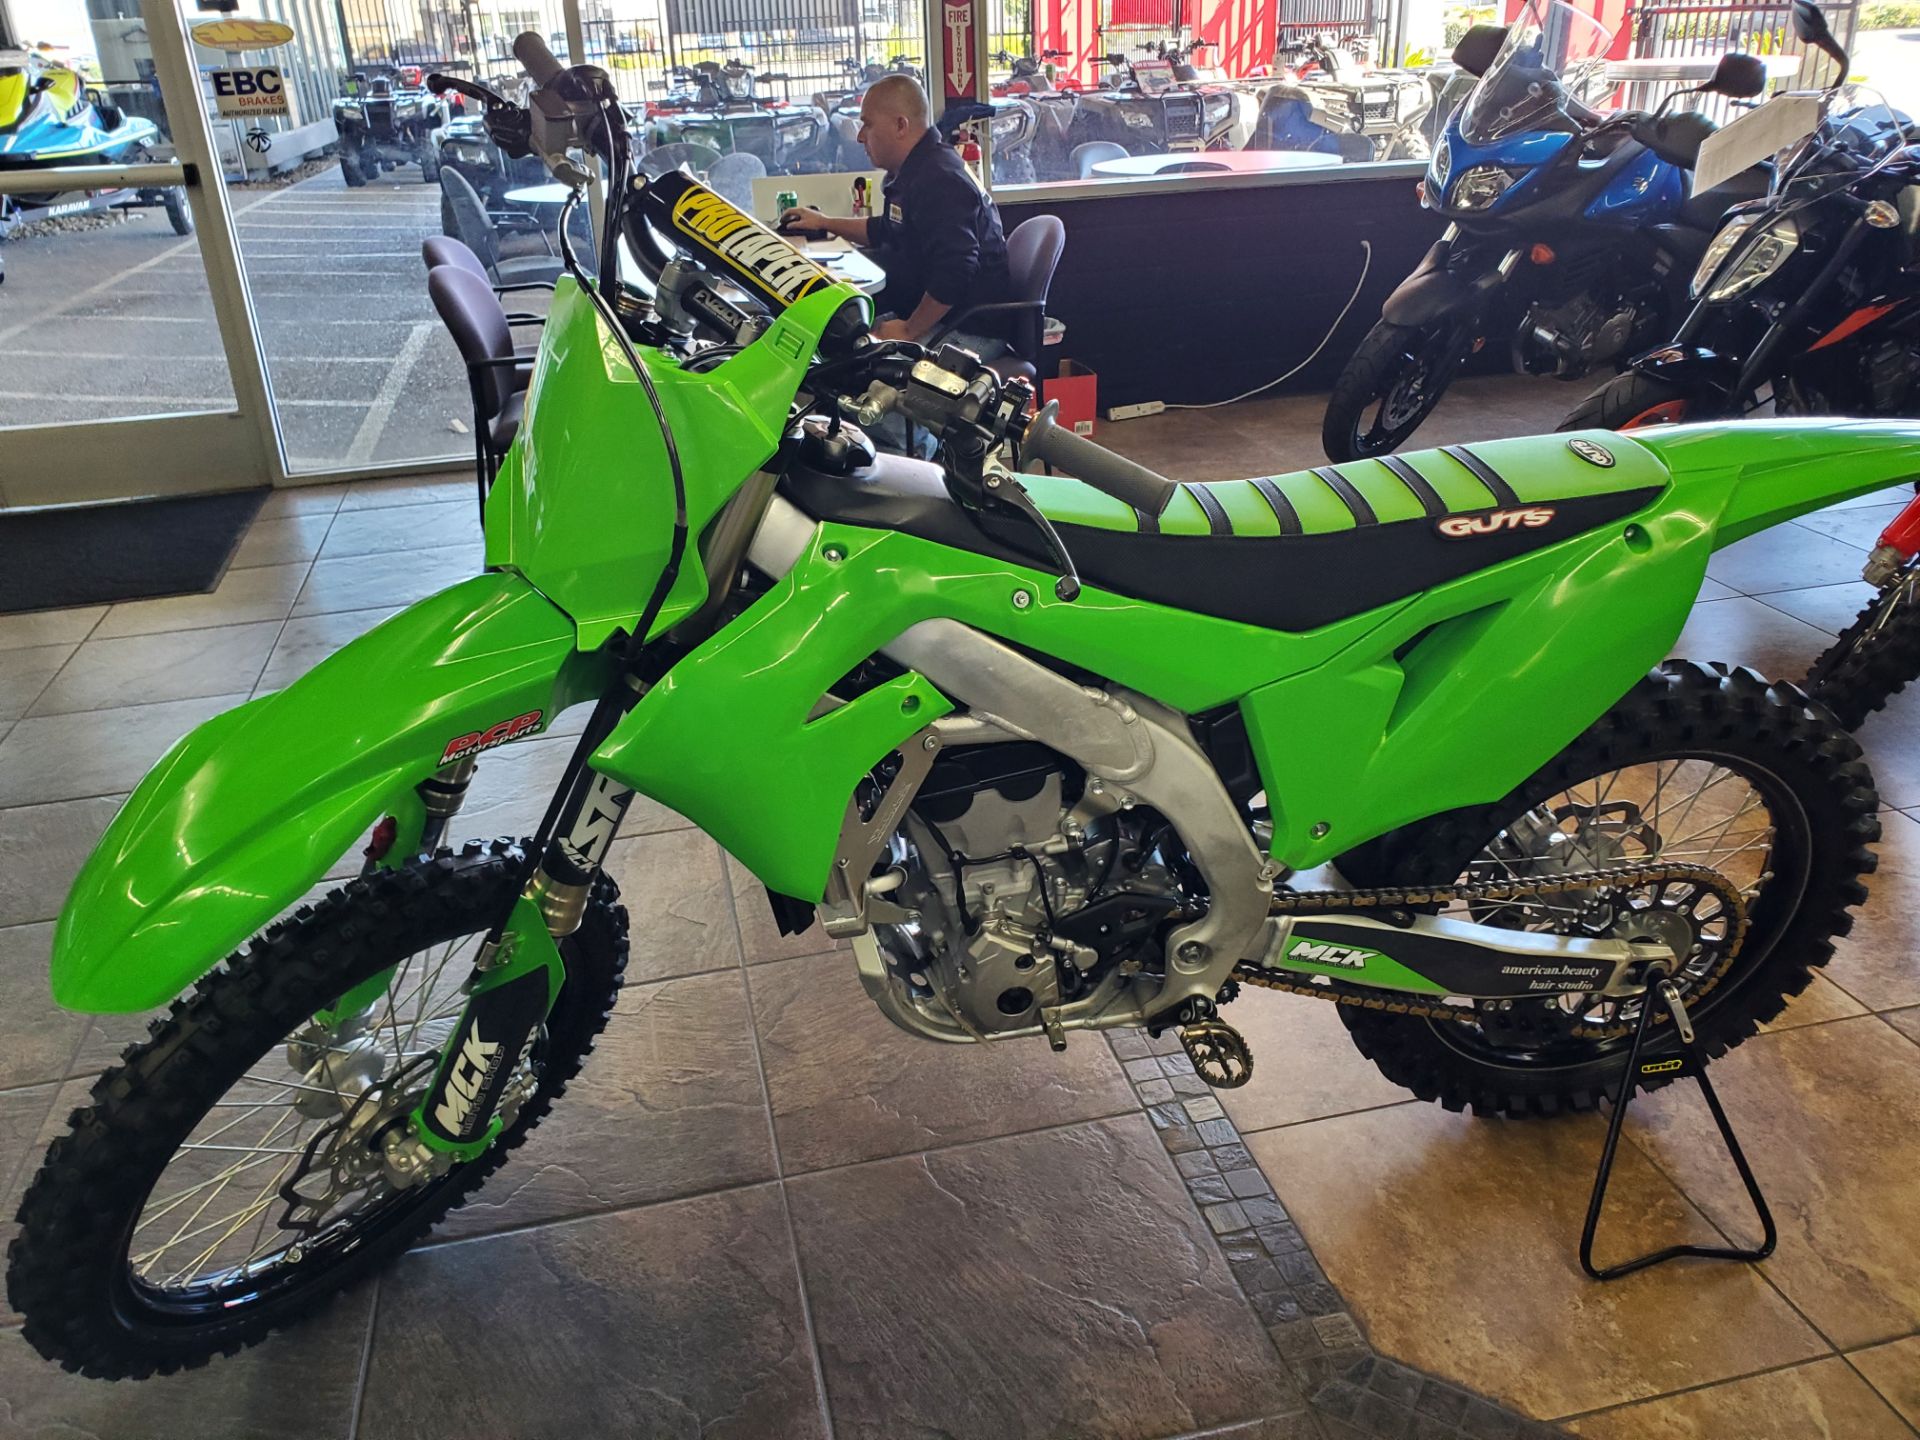 2021 Kawasaki KX 250 in Sacramento, California - Photo 1